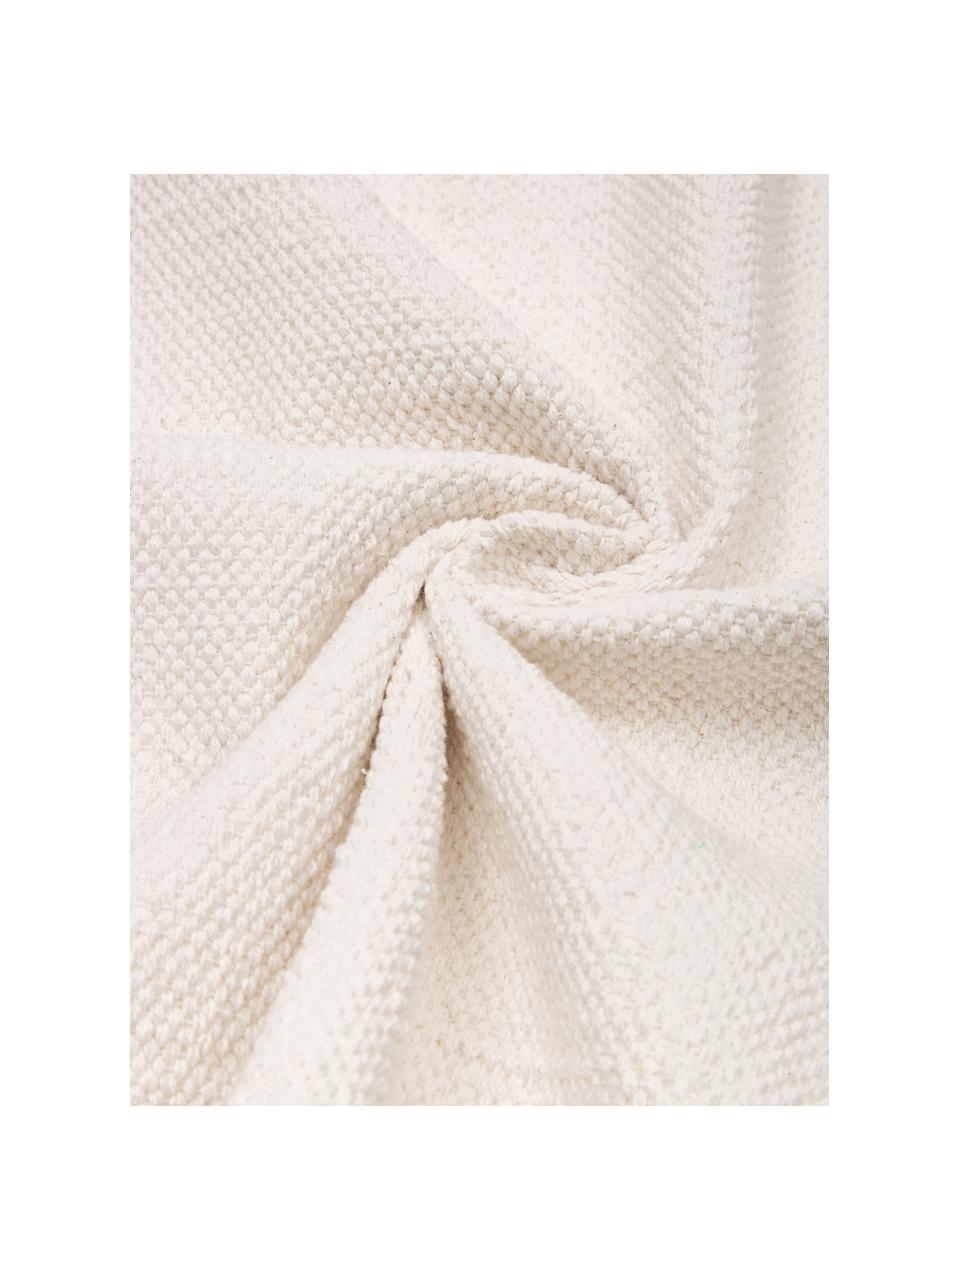 Tappeto in cotone sottile tessuto a mano bianco sporco Agneta, 100% cotone, Bianco, Larg. 70 x Lung. 140 cm (taglia XS)